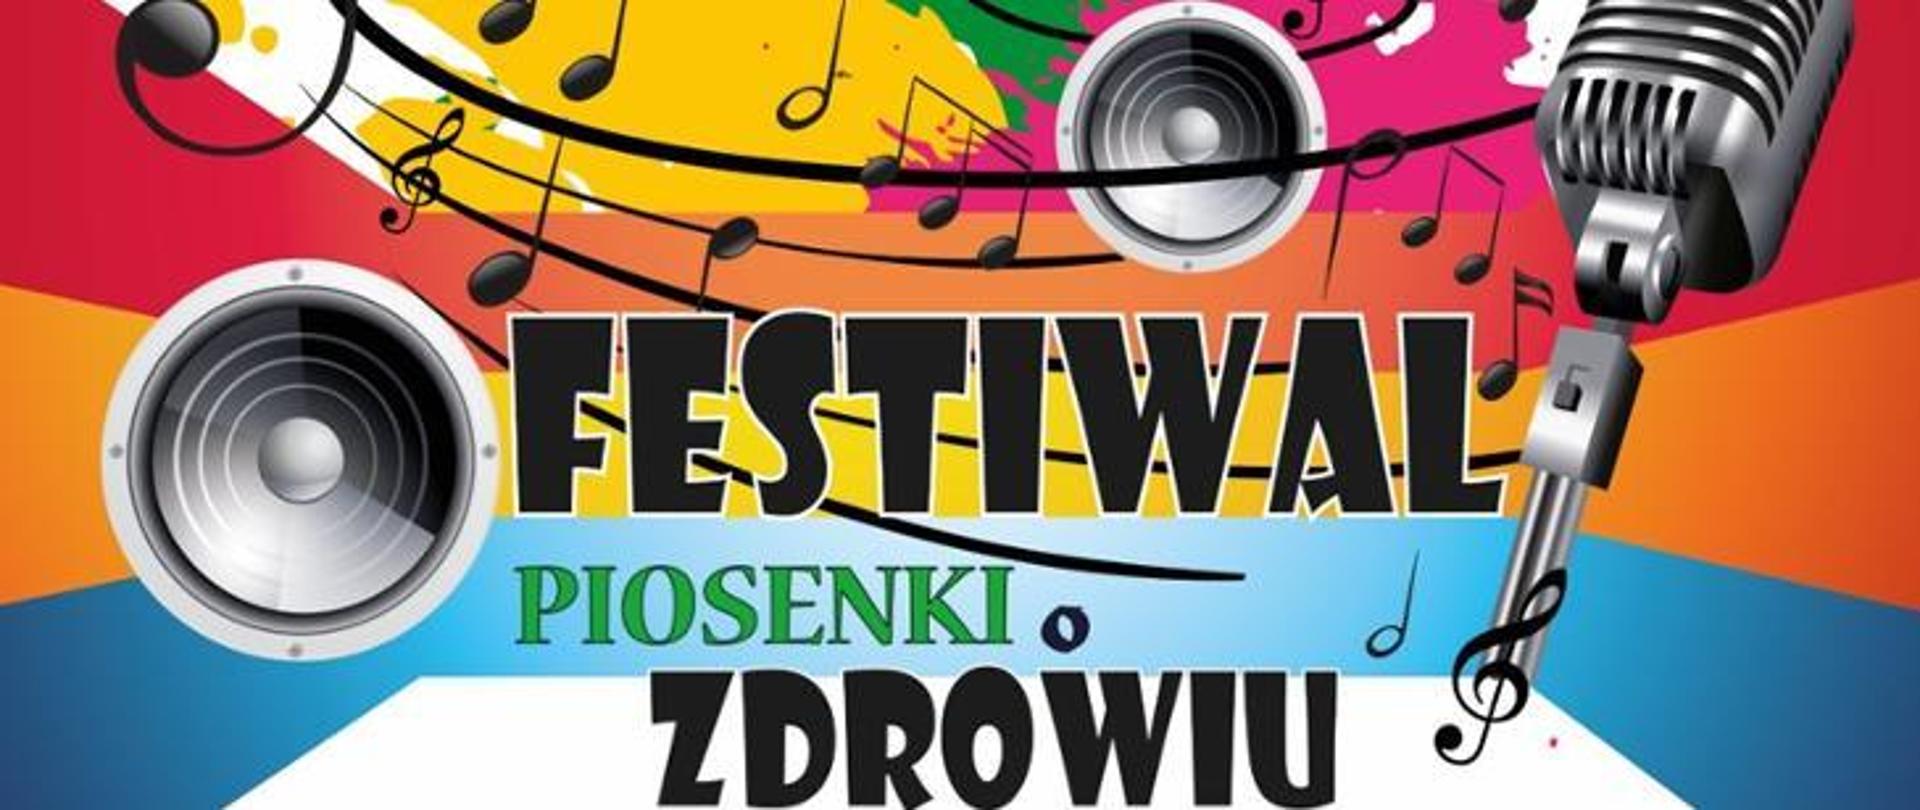 Na kolorowym tle widać mikrofon, głośniki oraz nuty, widnieje również napis "Festiwal Piosenki o Zdrowiu".